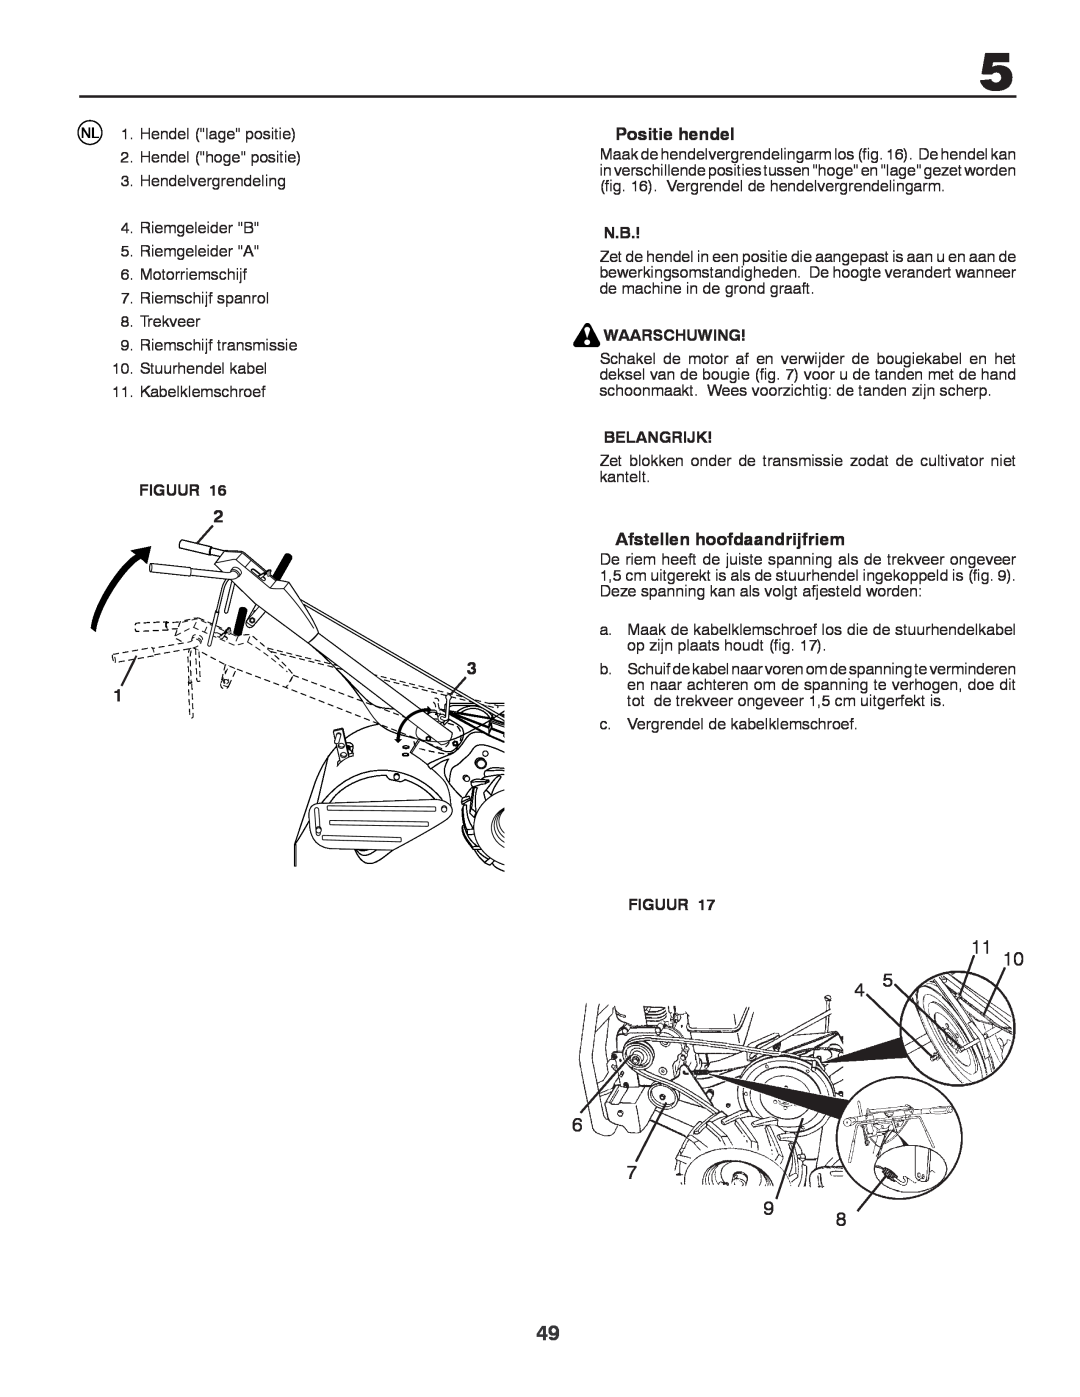 Husqvarna CRT81 instruction manual Positie hendel, Afstellen hoofdaandrijfriem, Figuur, Waarschuwing, Belangrijk 